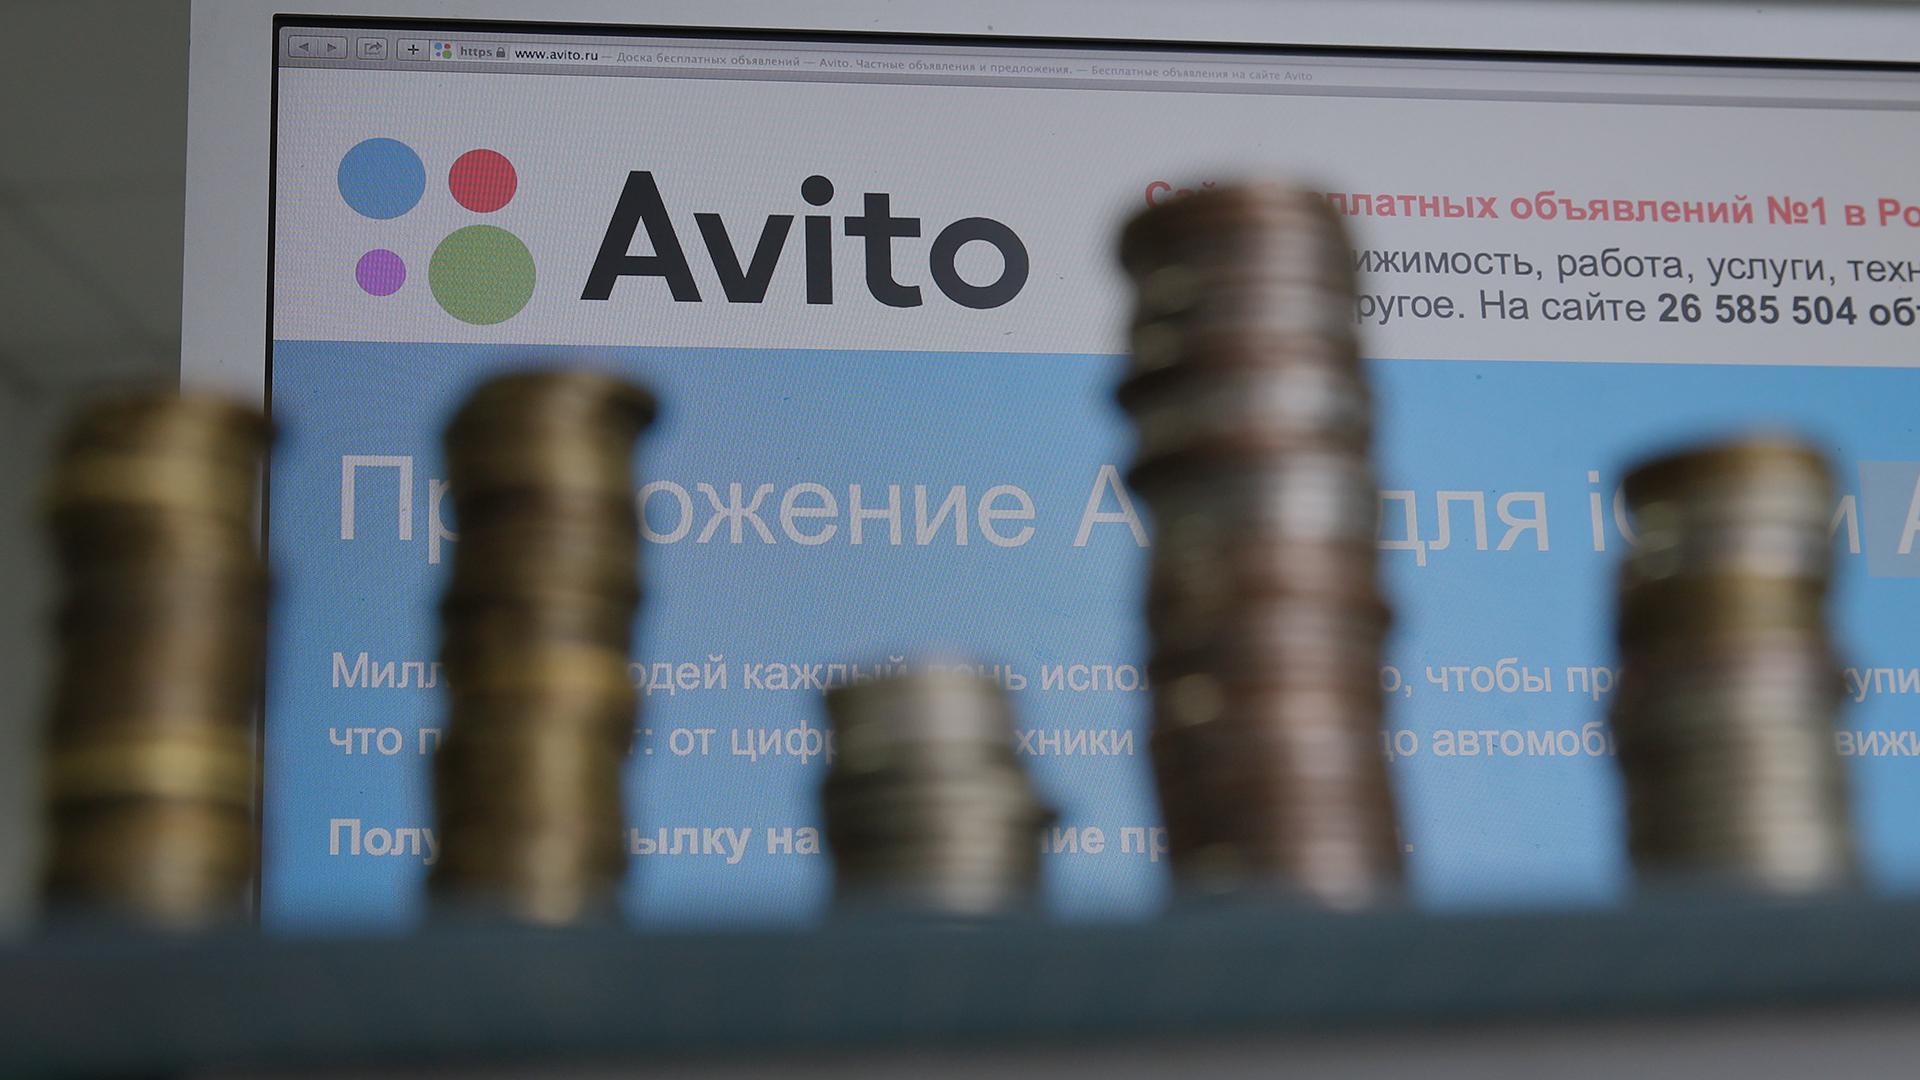 Avito потерял данные сотни тысяч людей. Как мошенники пользуются взломанными аккаунтами